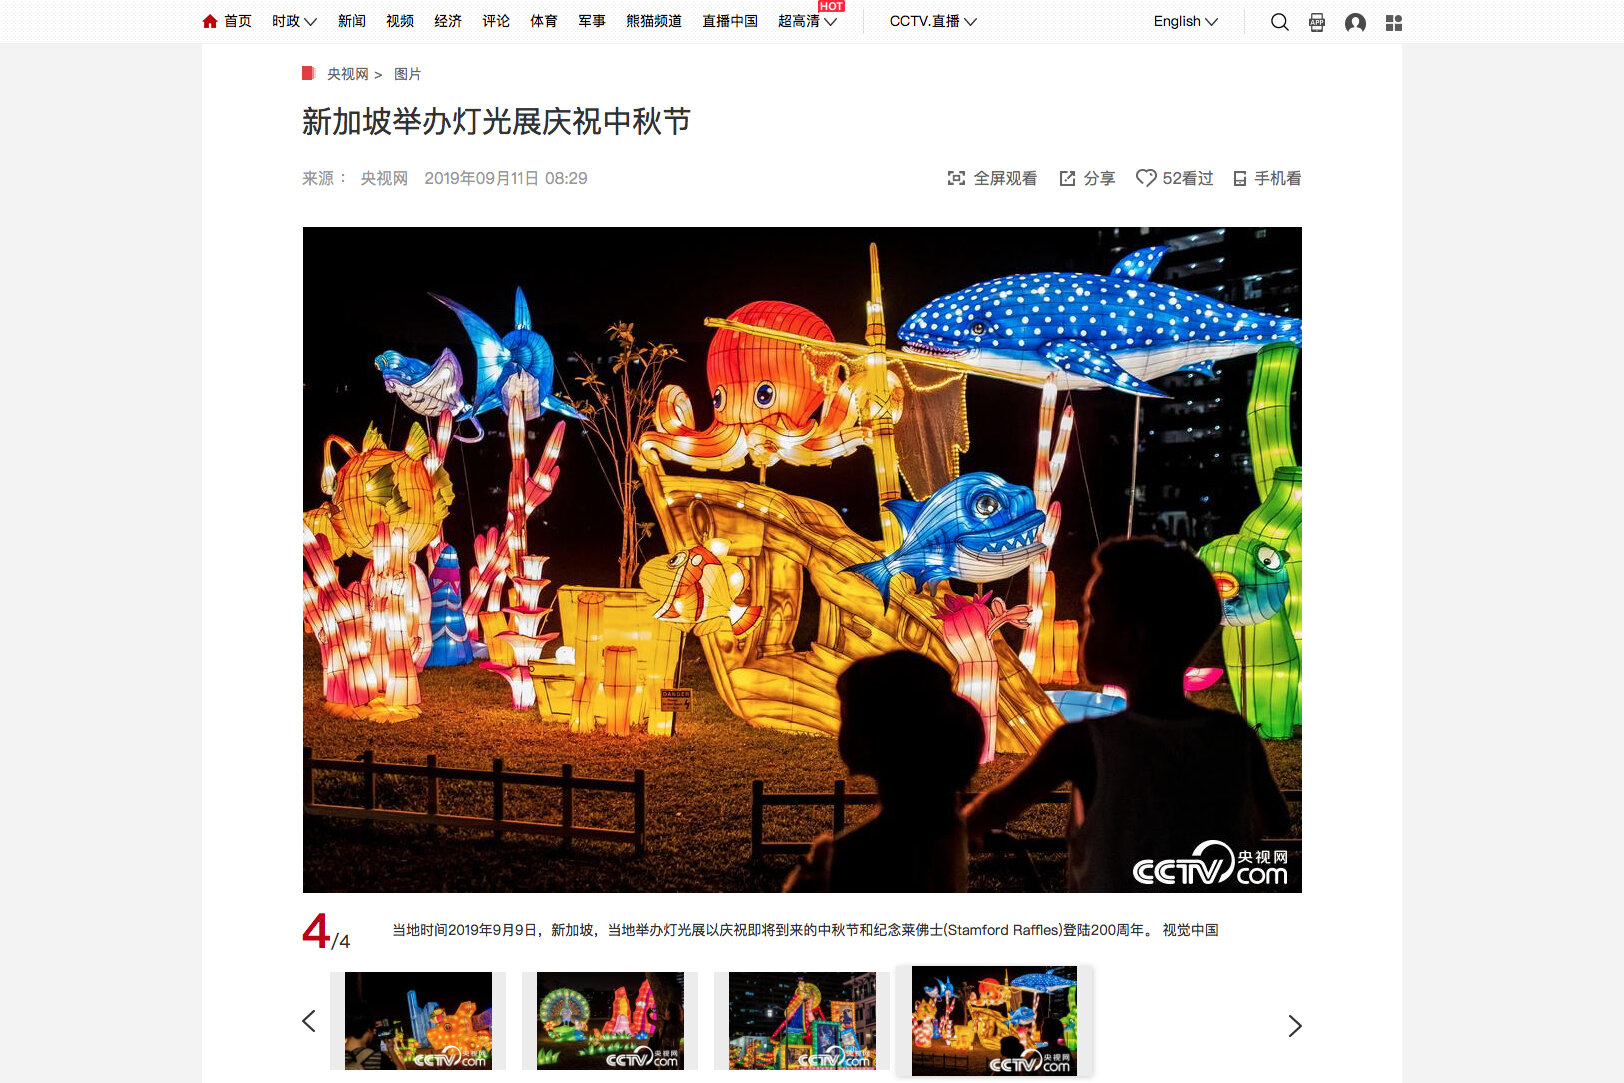  Midautumn Festival at Jurong Lake Gardens, Singapore - China Central Television/CCTV (China) 